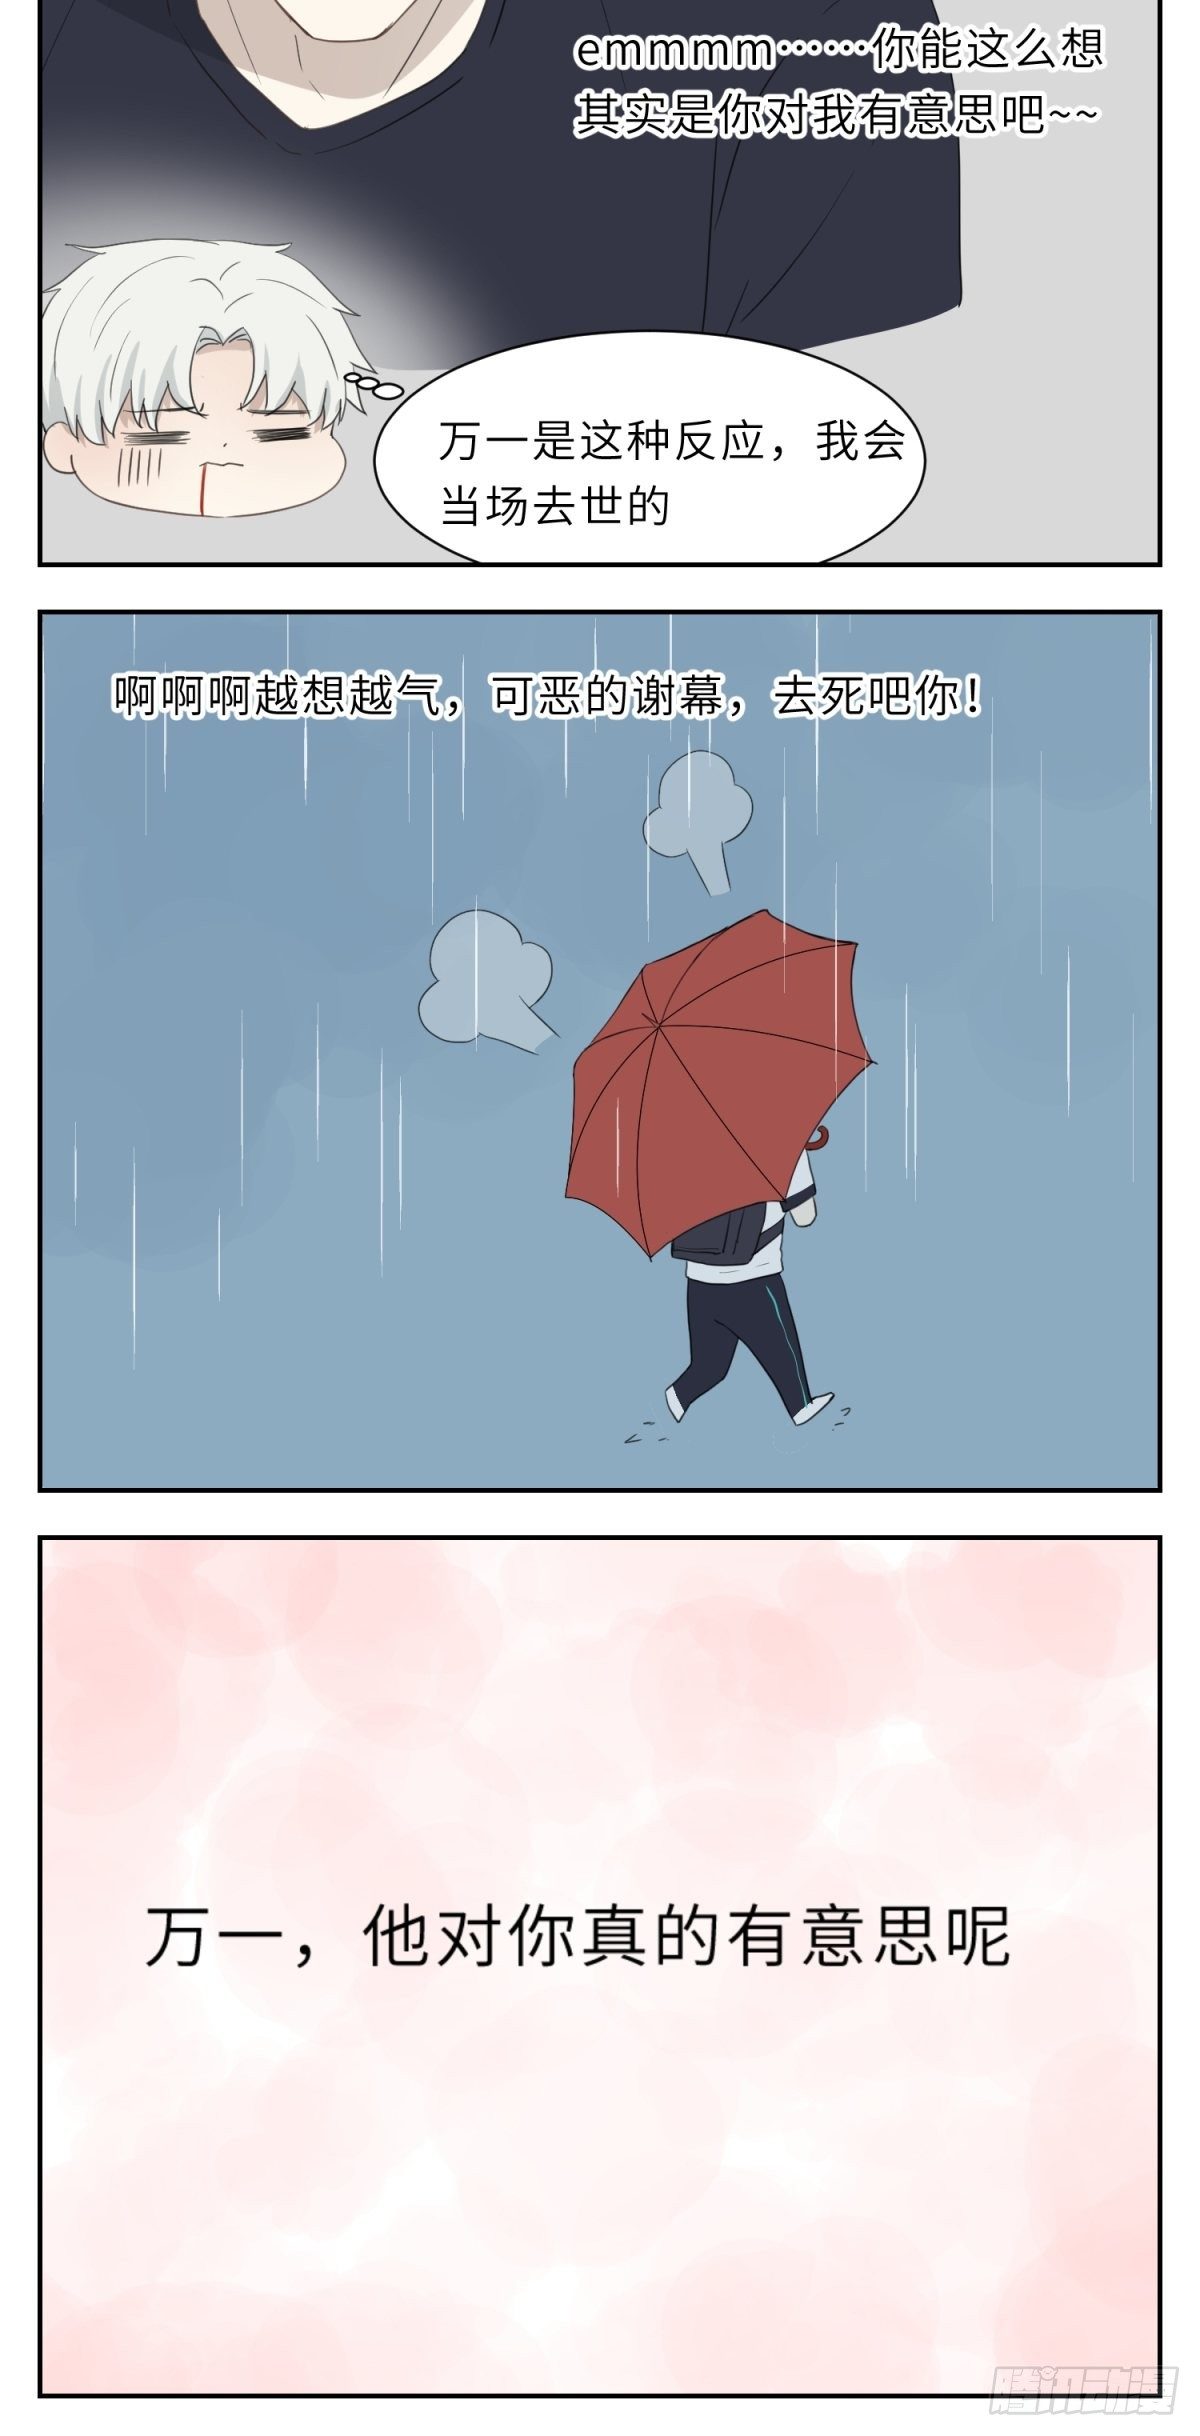 撩花 - 雨中思緒 - 1